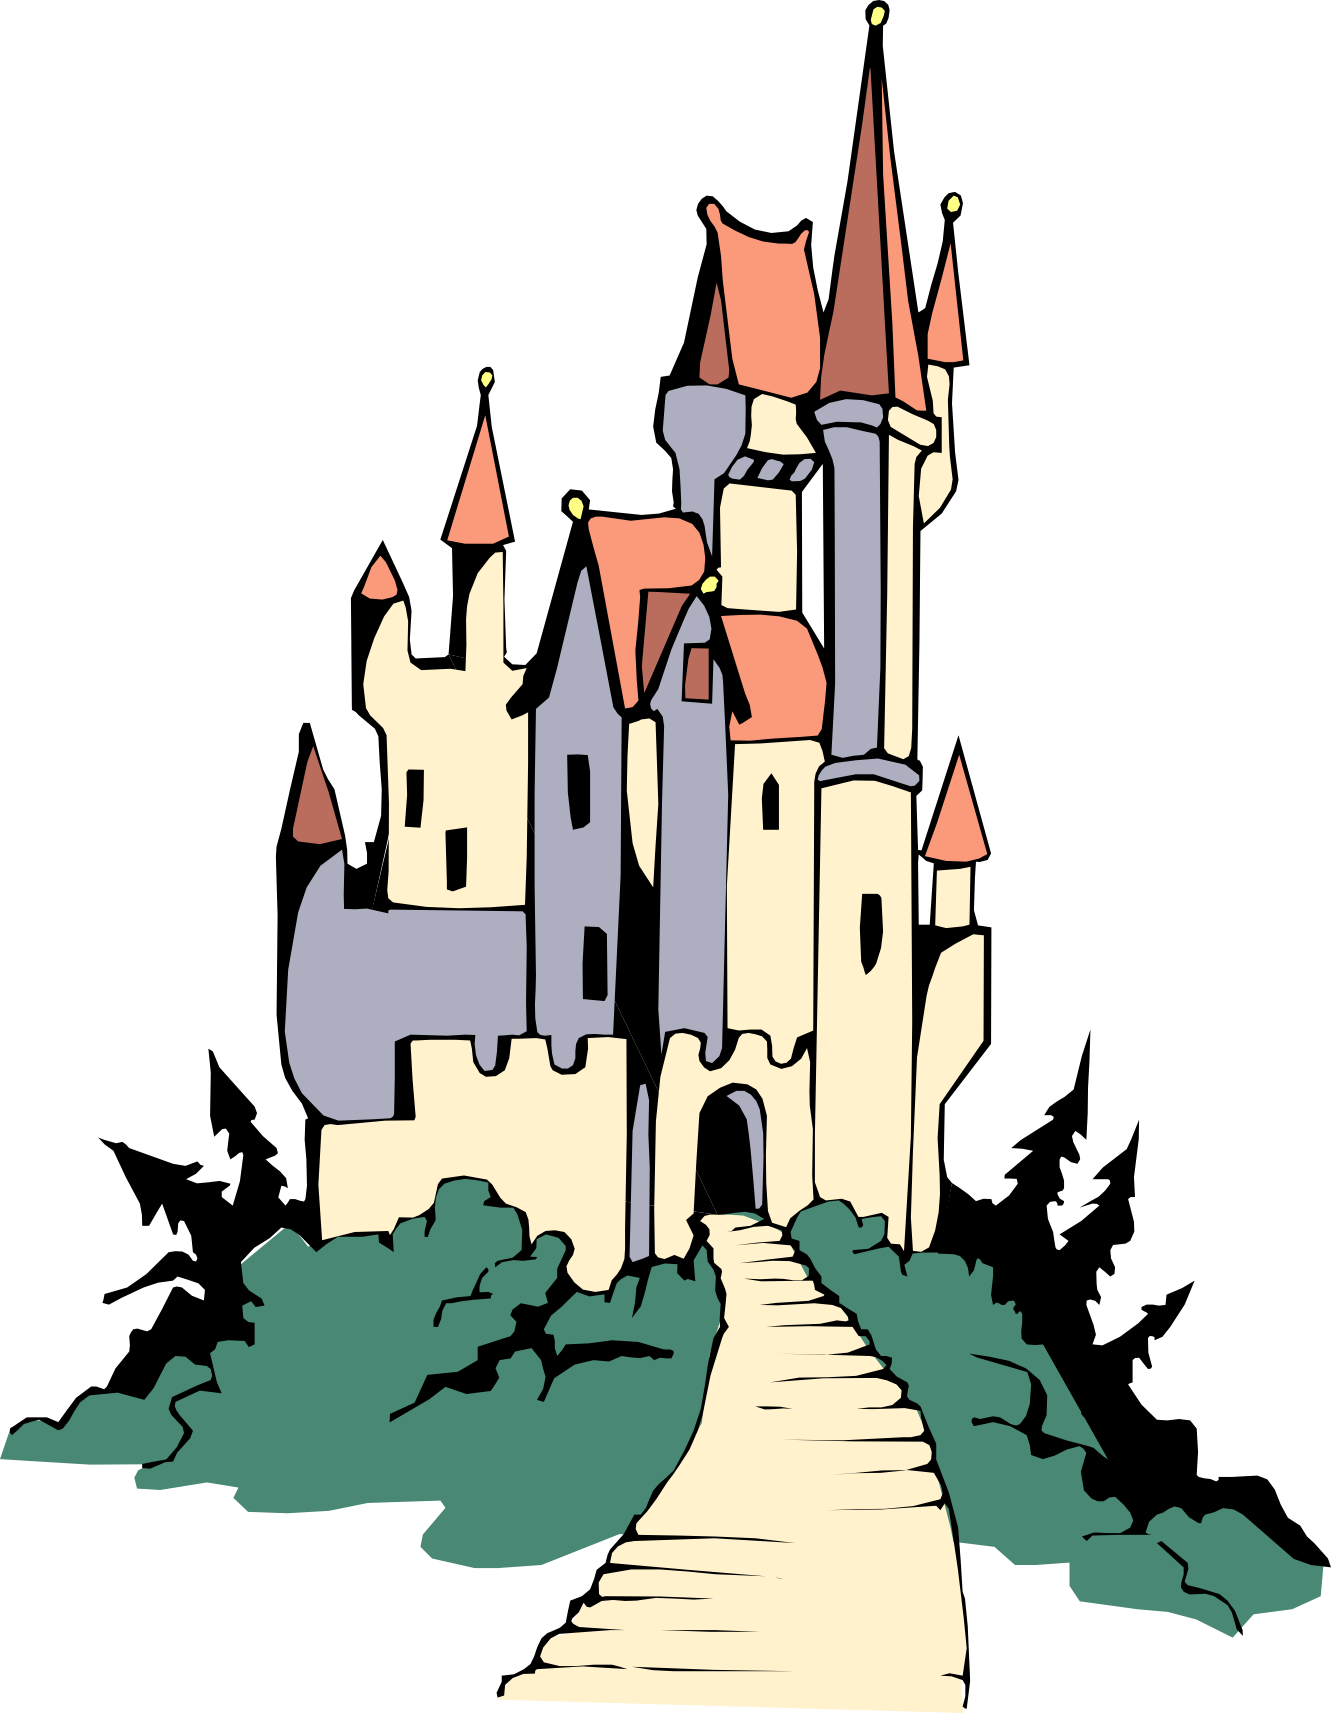 Fairytale Castle Clipart - Free Clipart Images